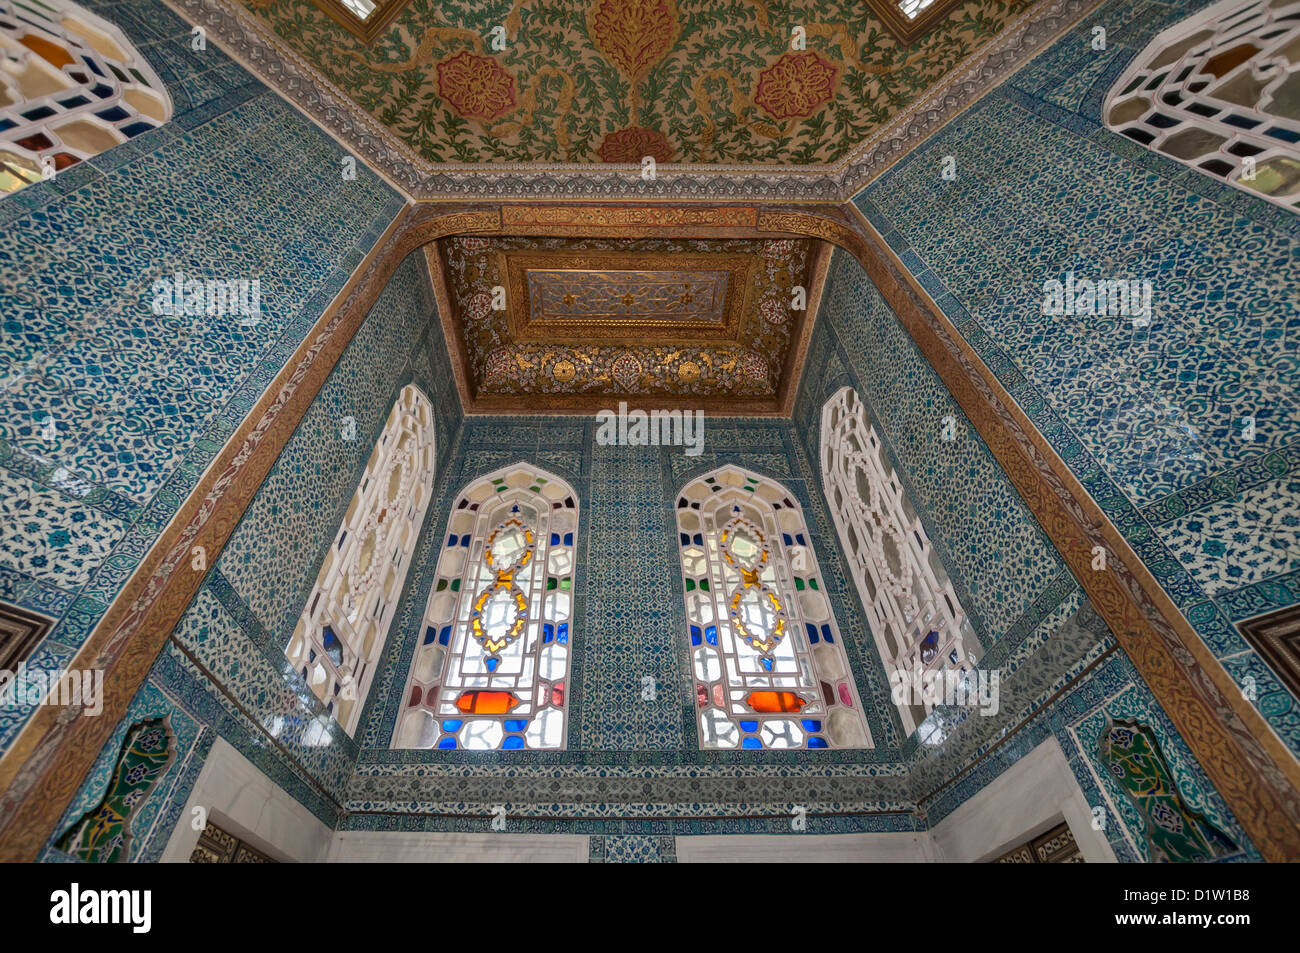 El Quiosco de Ereván en el Palacio de Topkapi, Estambul, Turquía Foto de stock